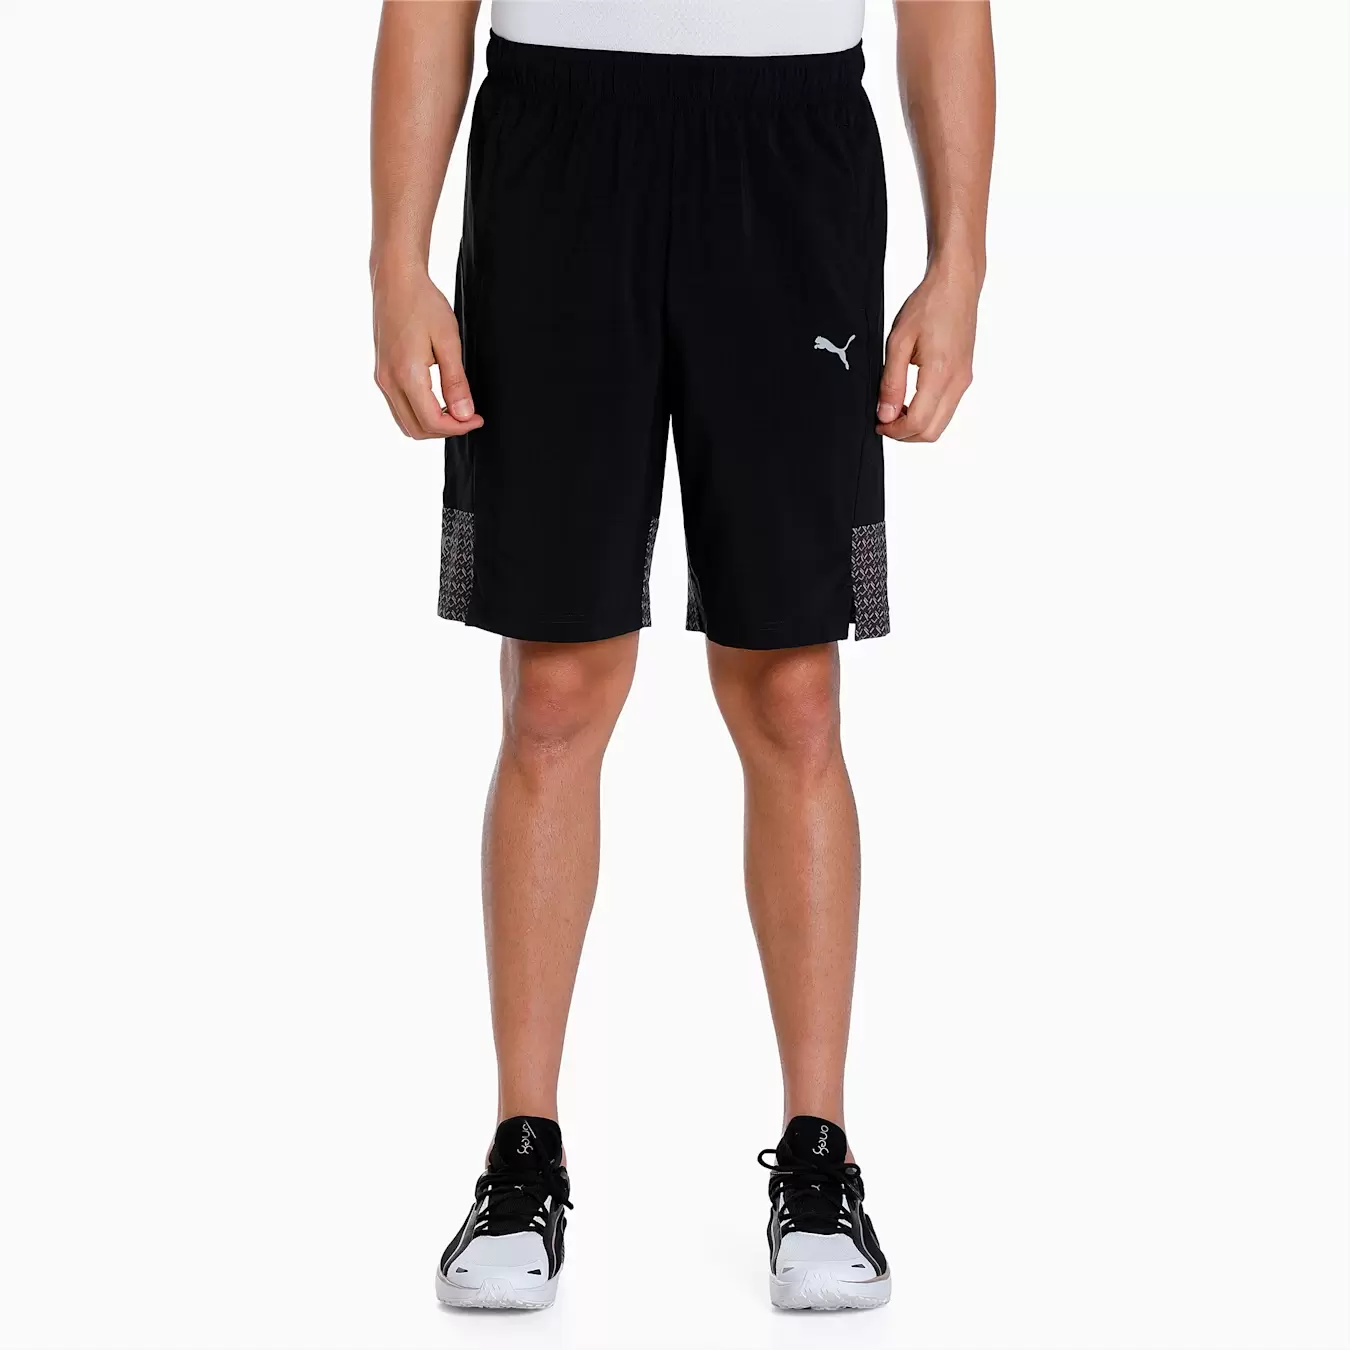 Puma One8 Virat Kohli Woven Men's Shorts